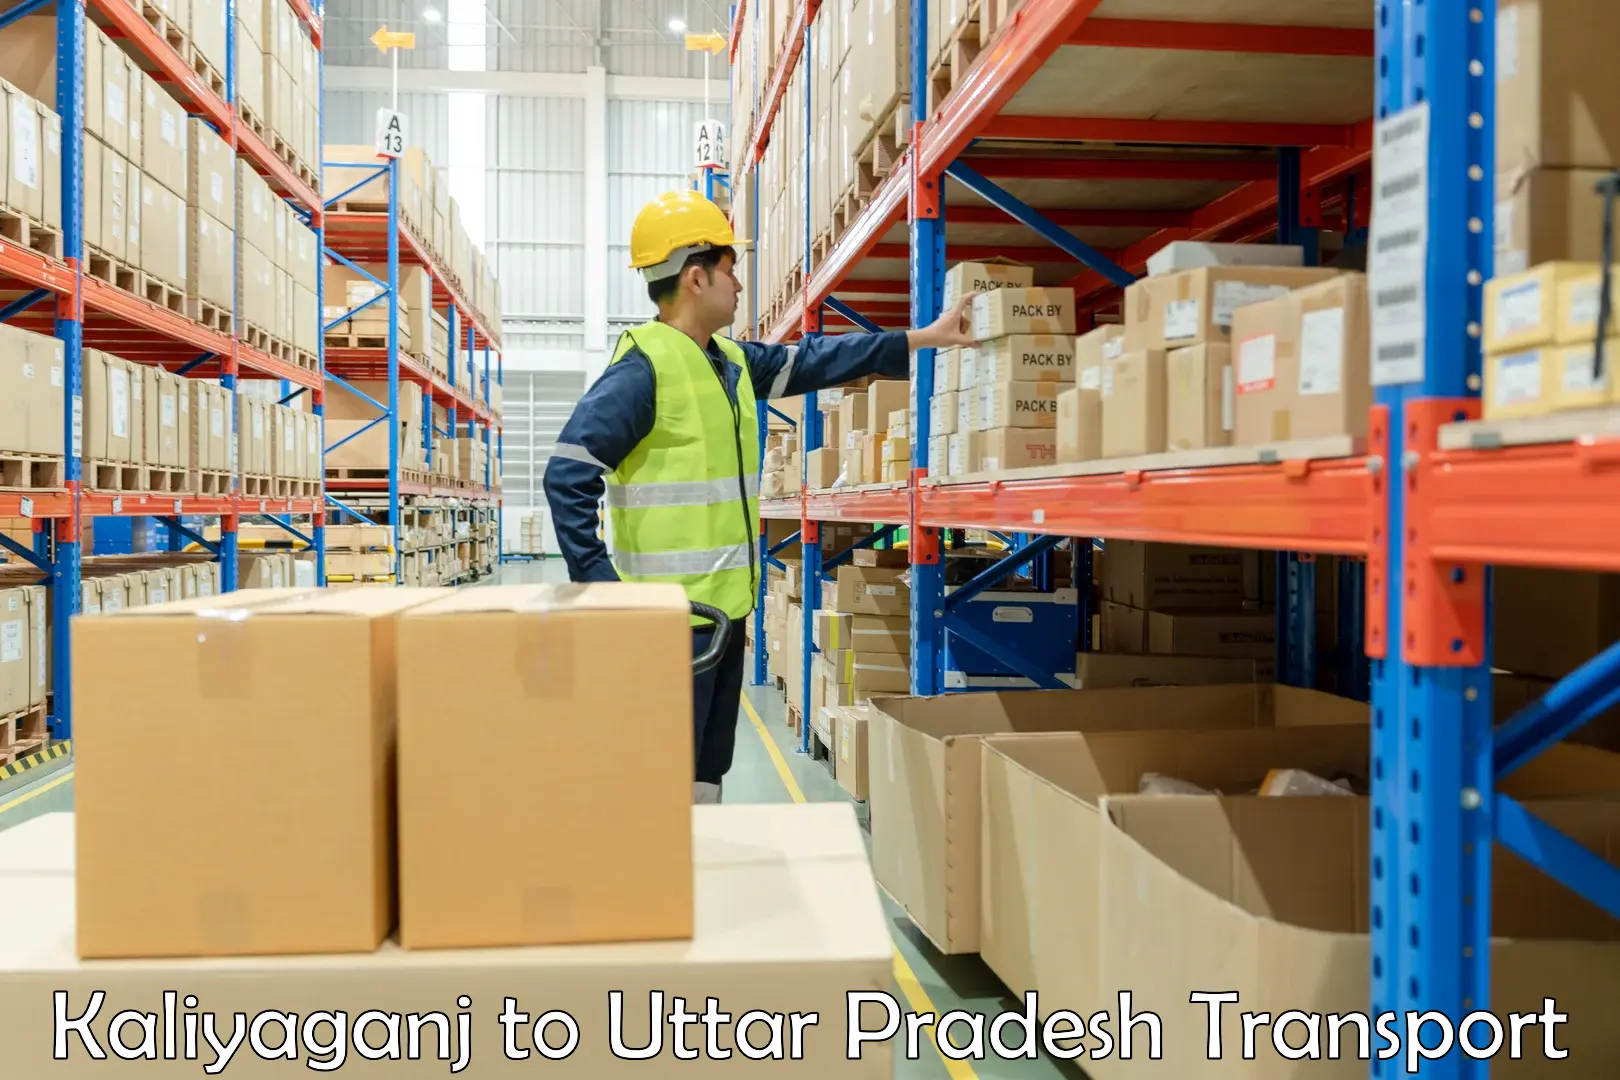 Furniture transport service Kaliyaganj to Sultanpur